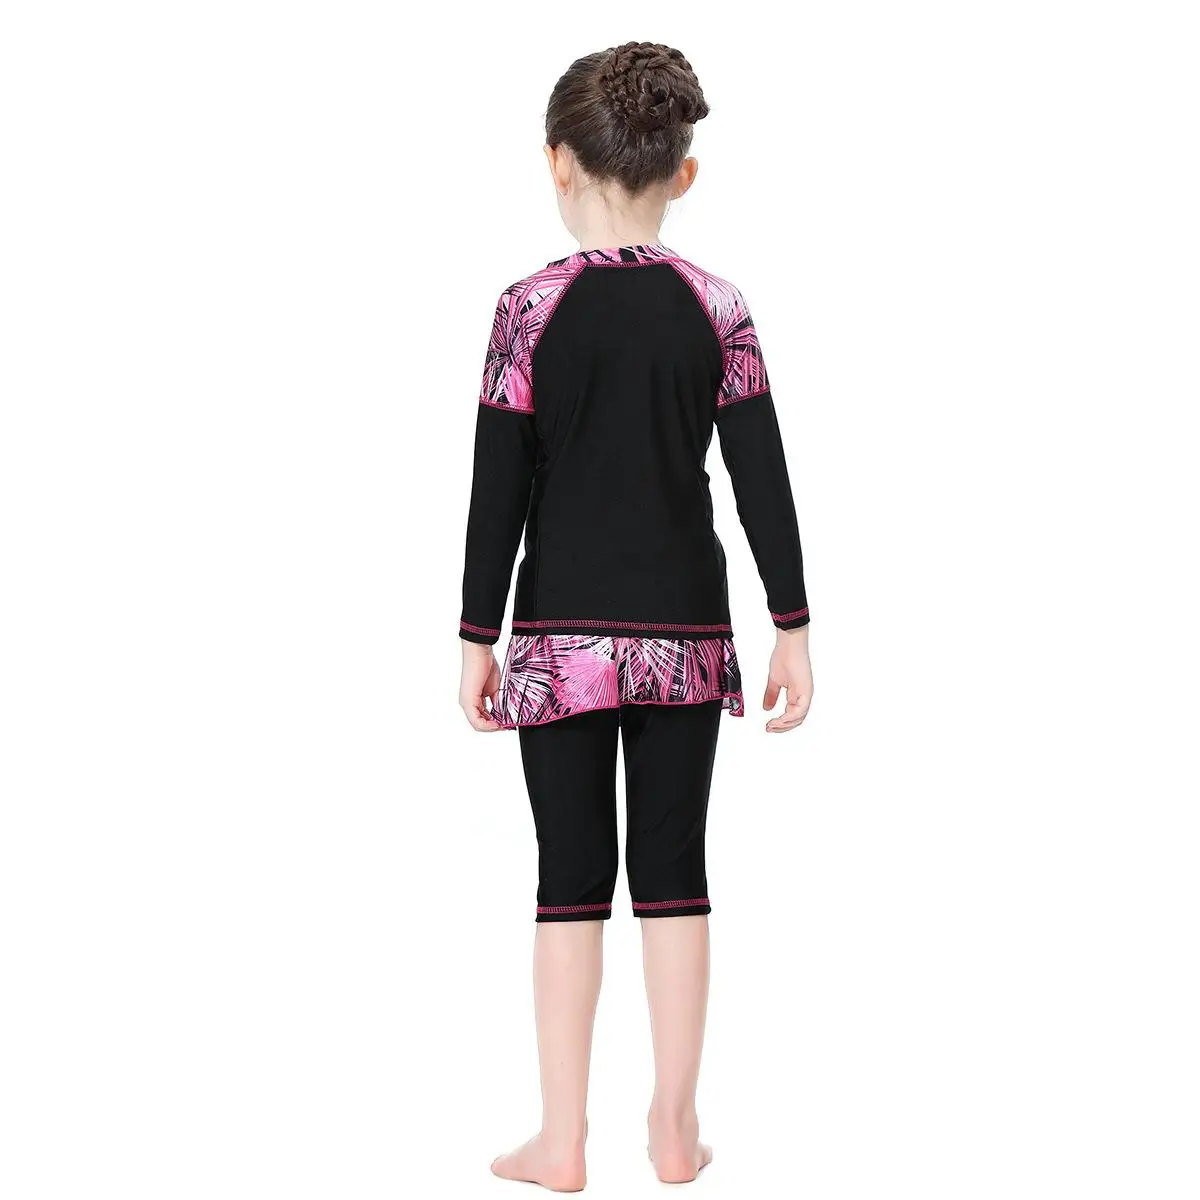 3 шт. Исламская пляжная одежда Буркини Купальник для девочек арабских Плавание пляжная мода мусульманский костюм скромный полное покрытие